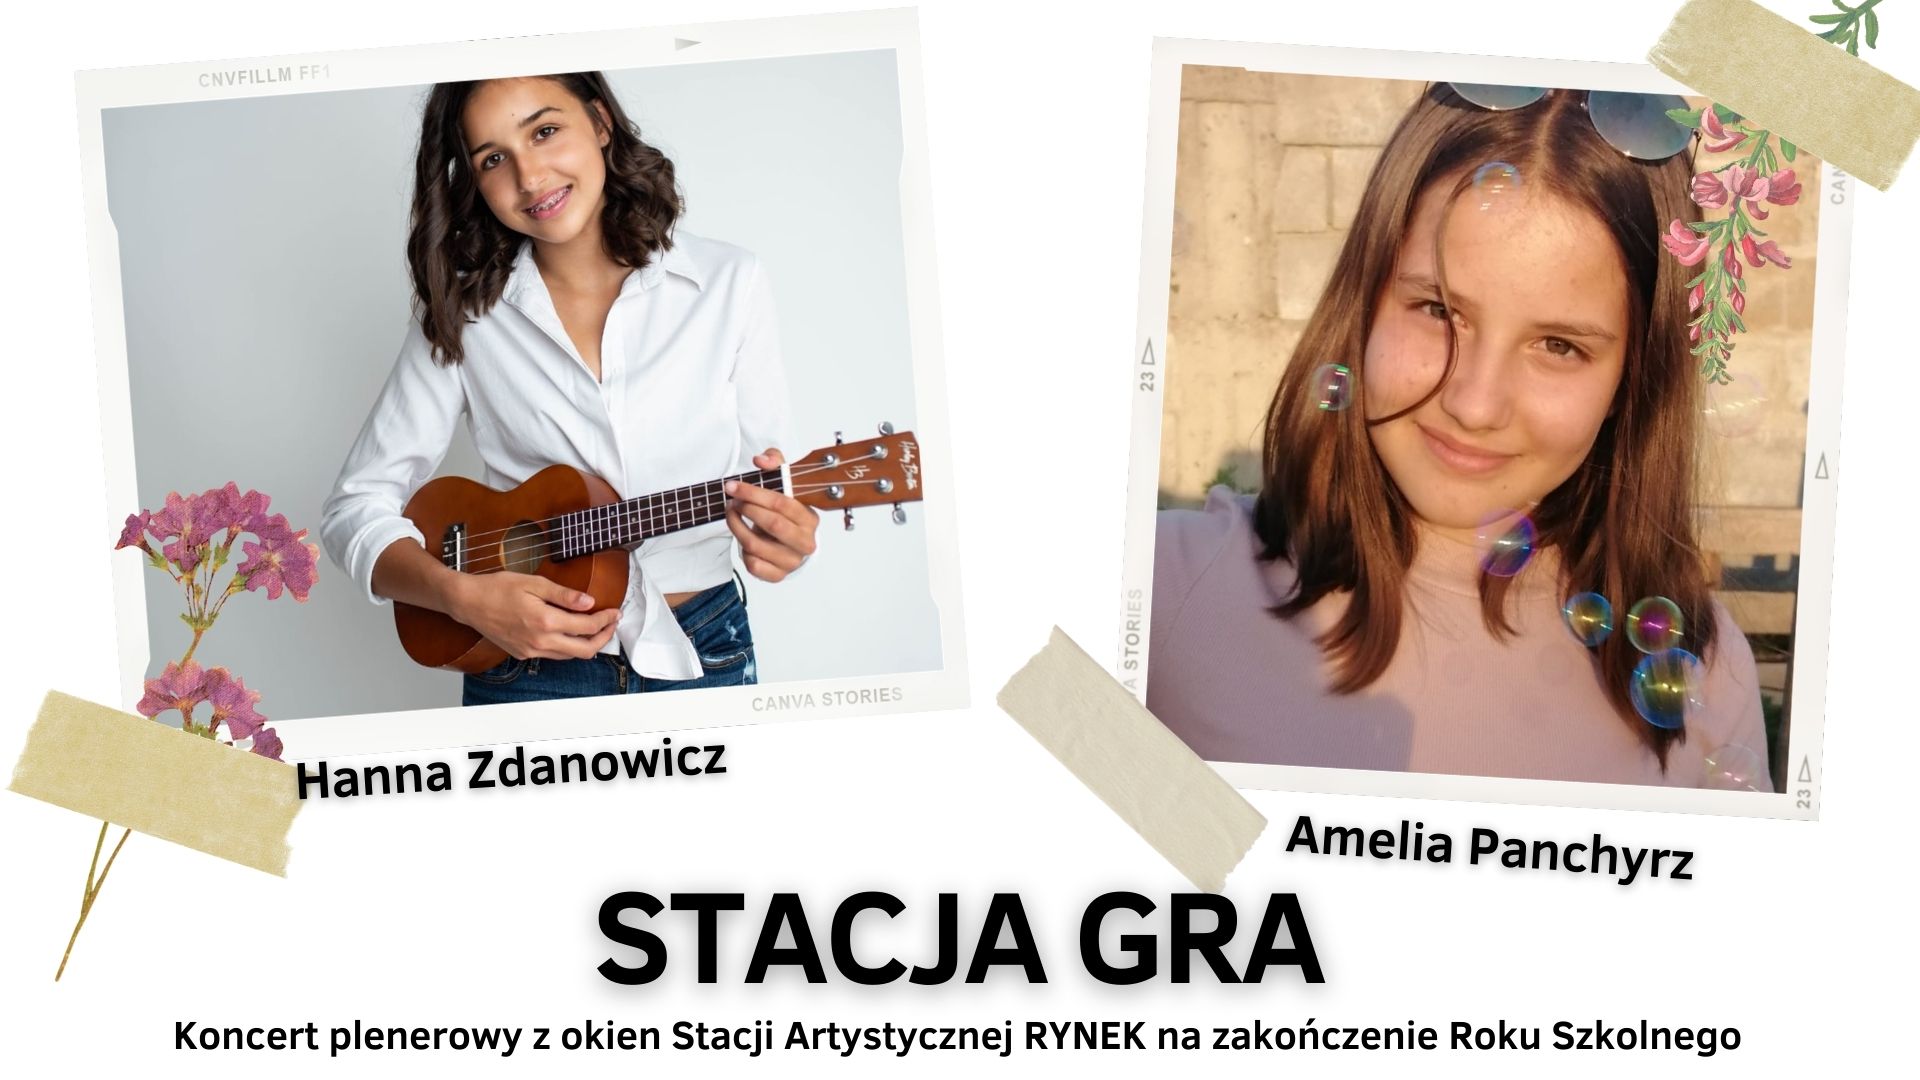 Koncert Stacja gra! | Hanna Zdanowicz & Amelia Panchyrz